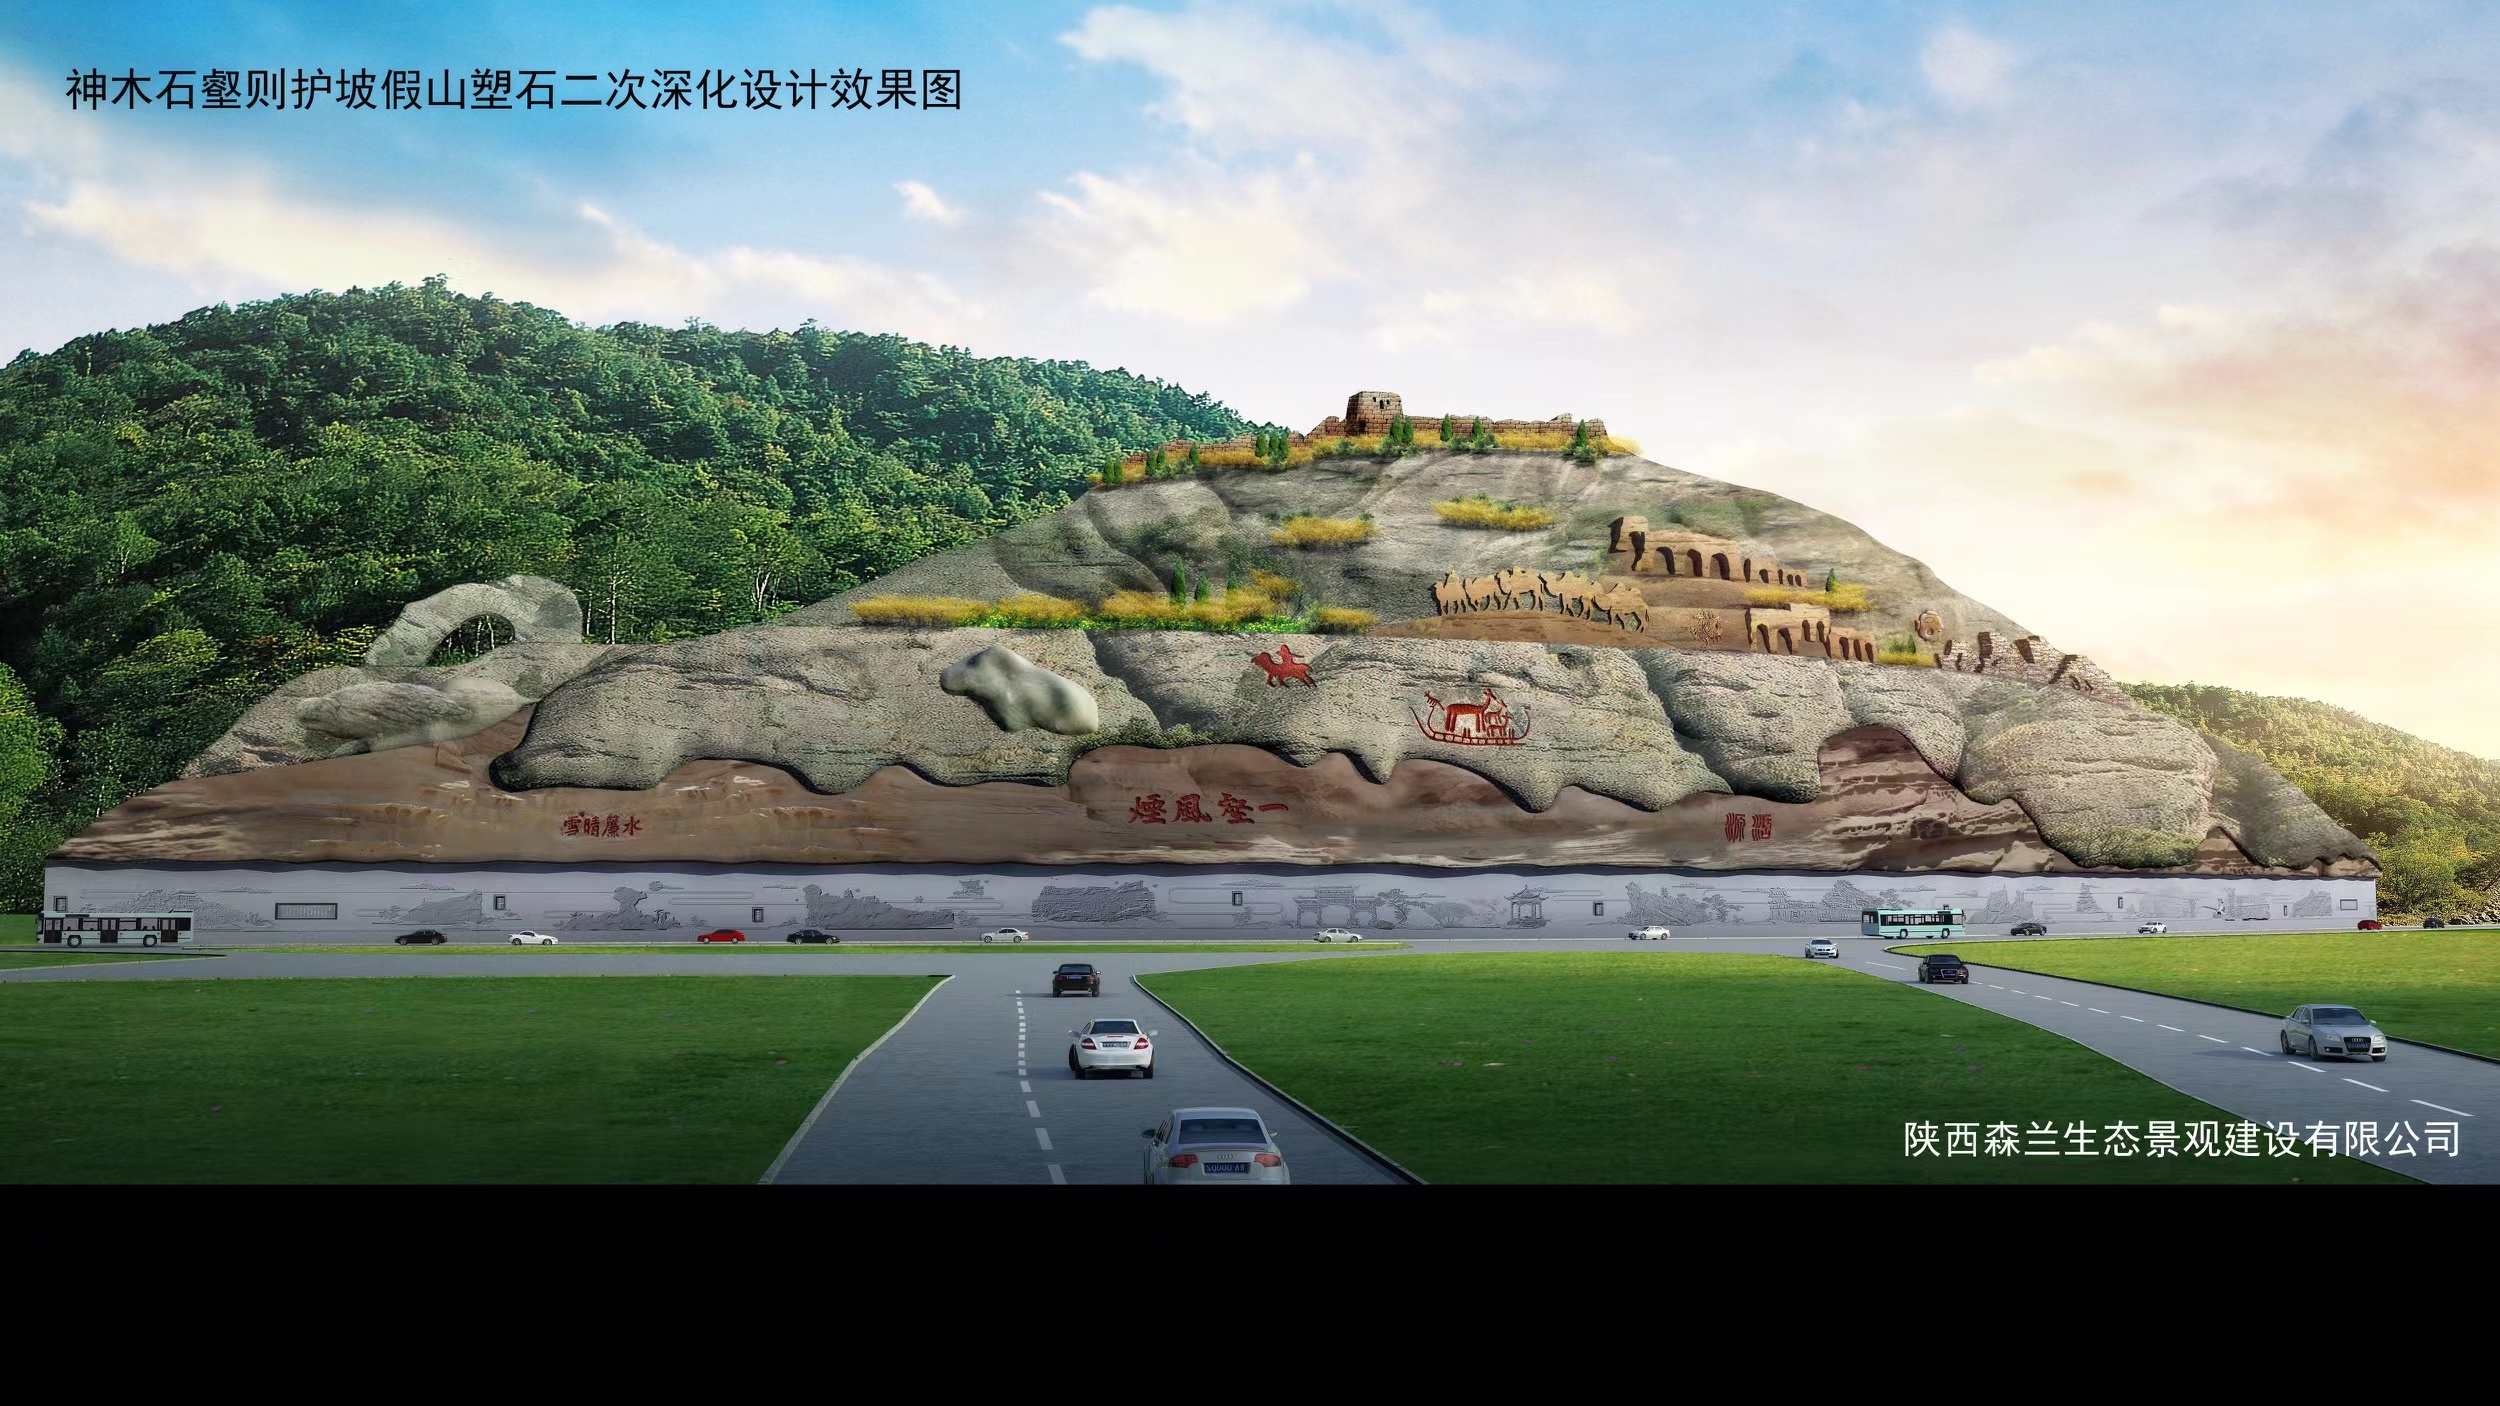 海东游乐园假山景观设计,海东大型塑石假山施工队,水池假山